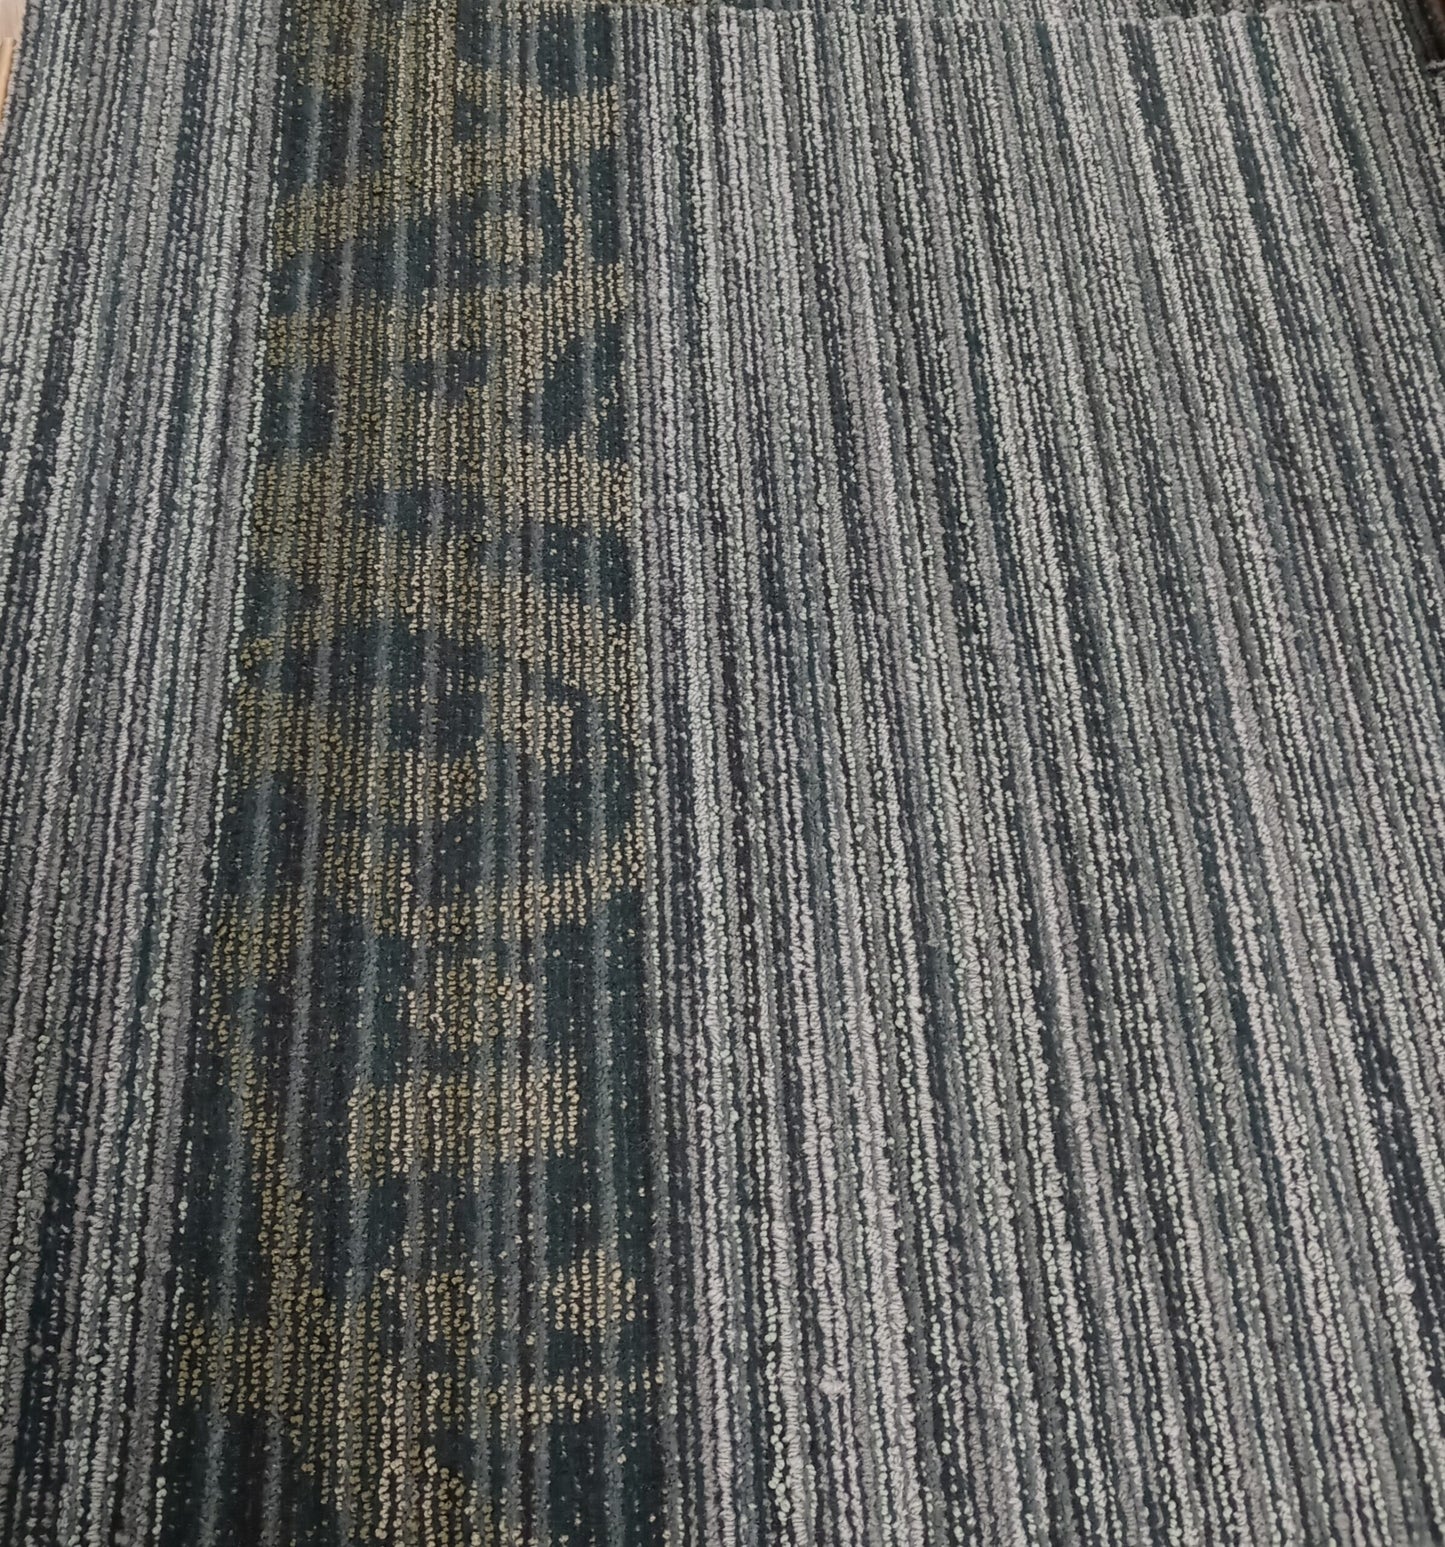 Shaw BLUE 00450 Carpet Tile. 48sq.ft./Case